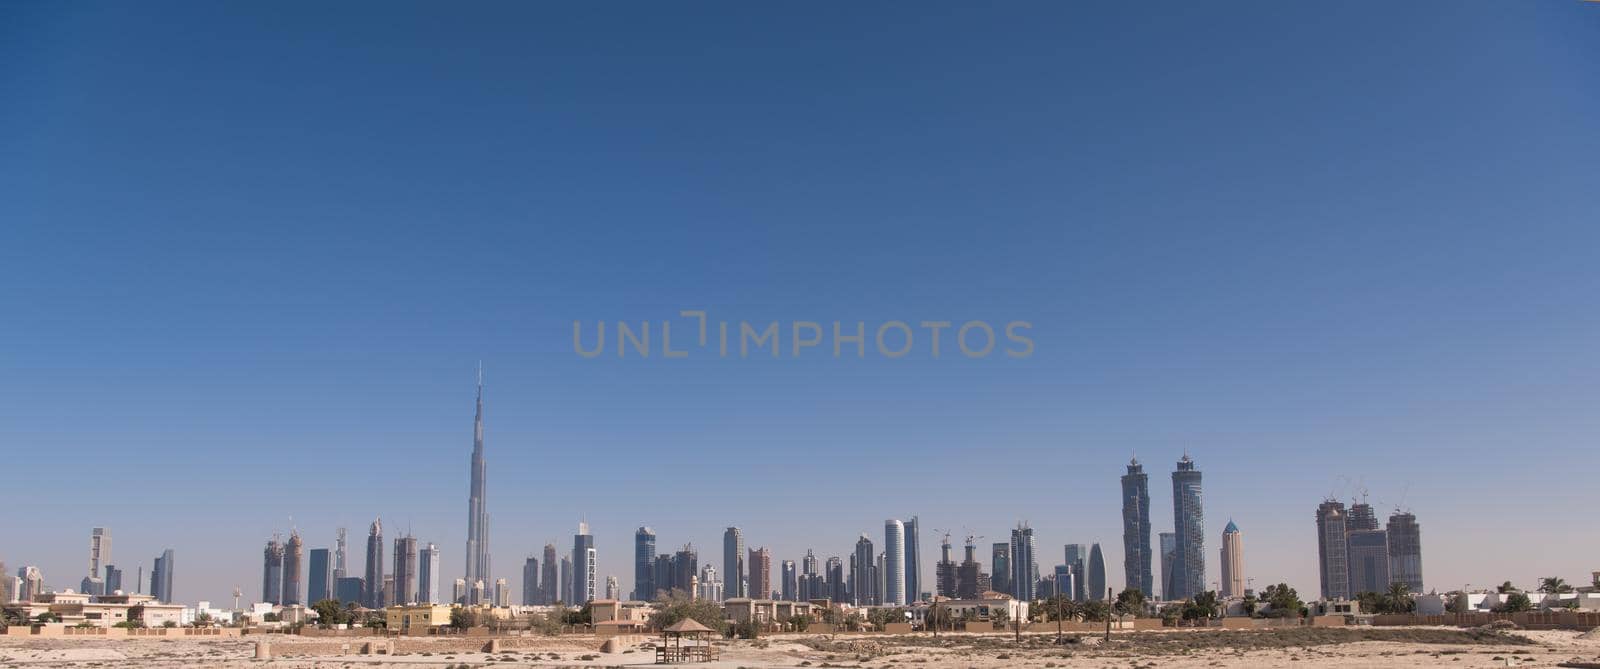 Panorama Dubai city by dotshock